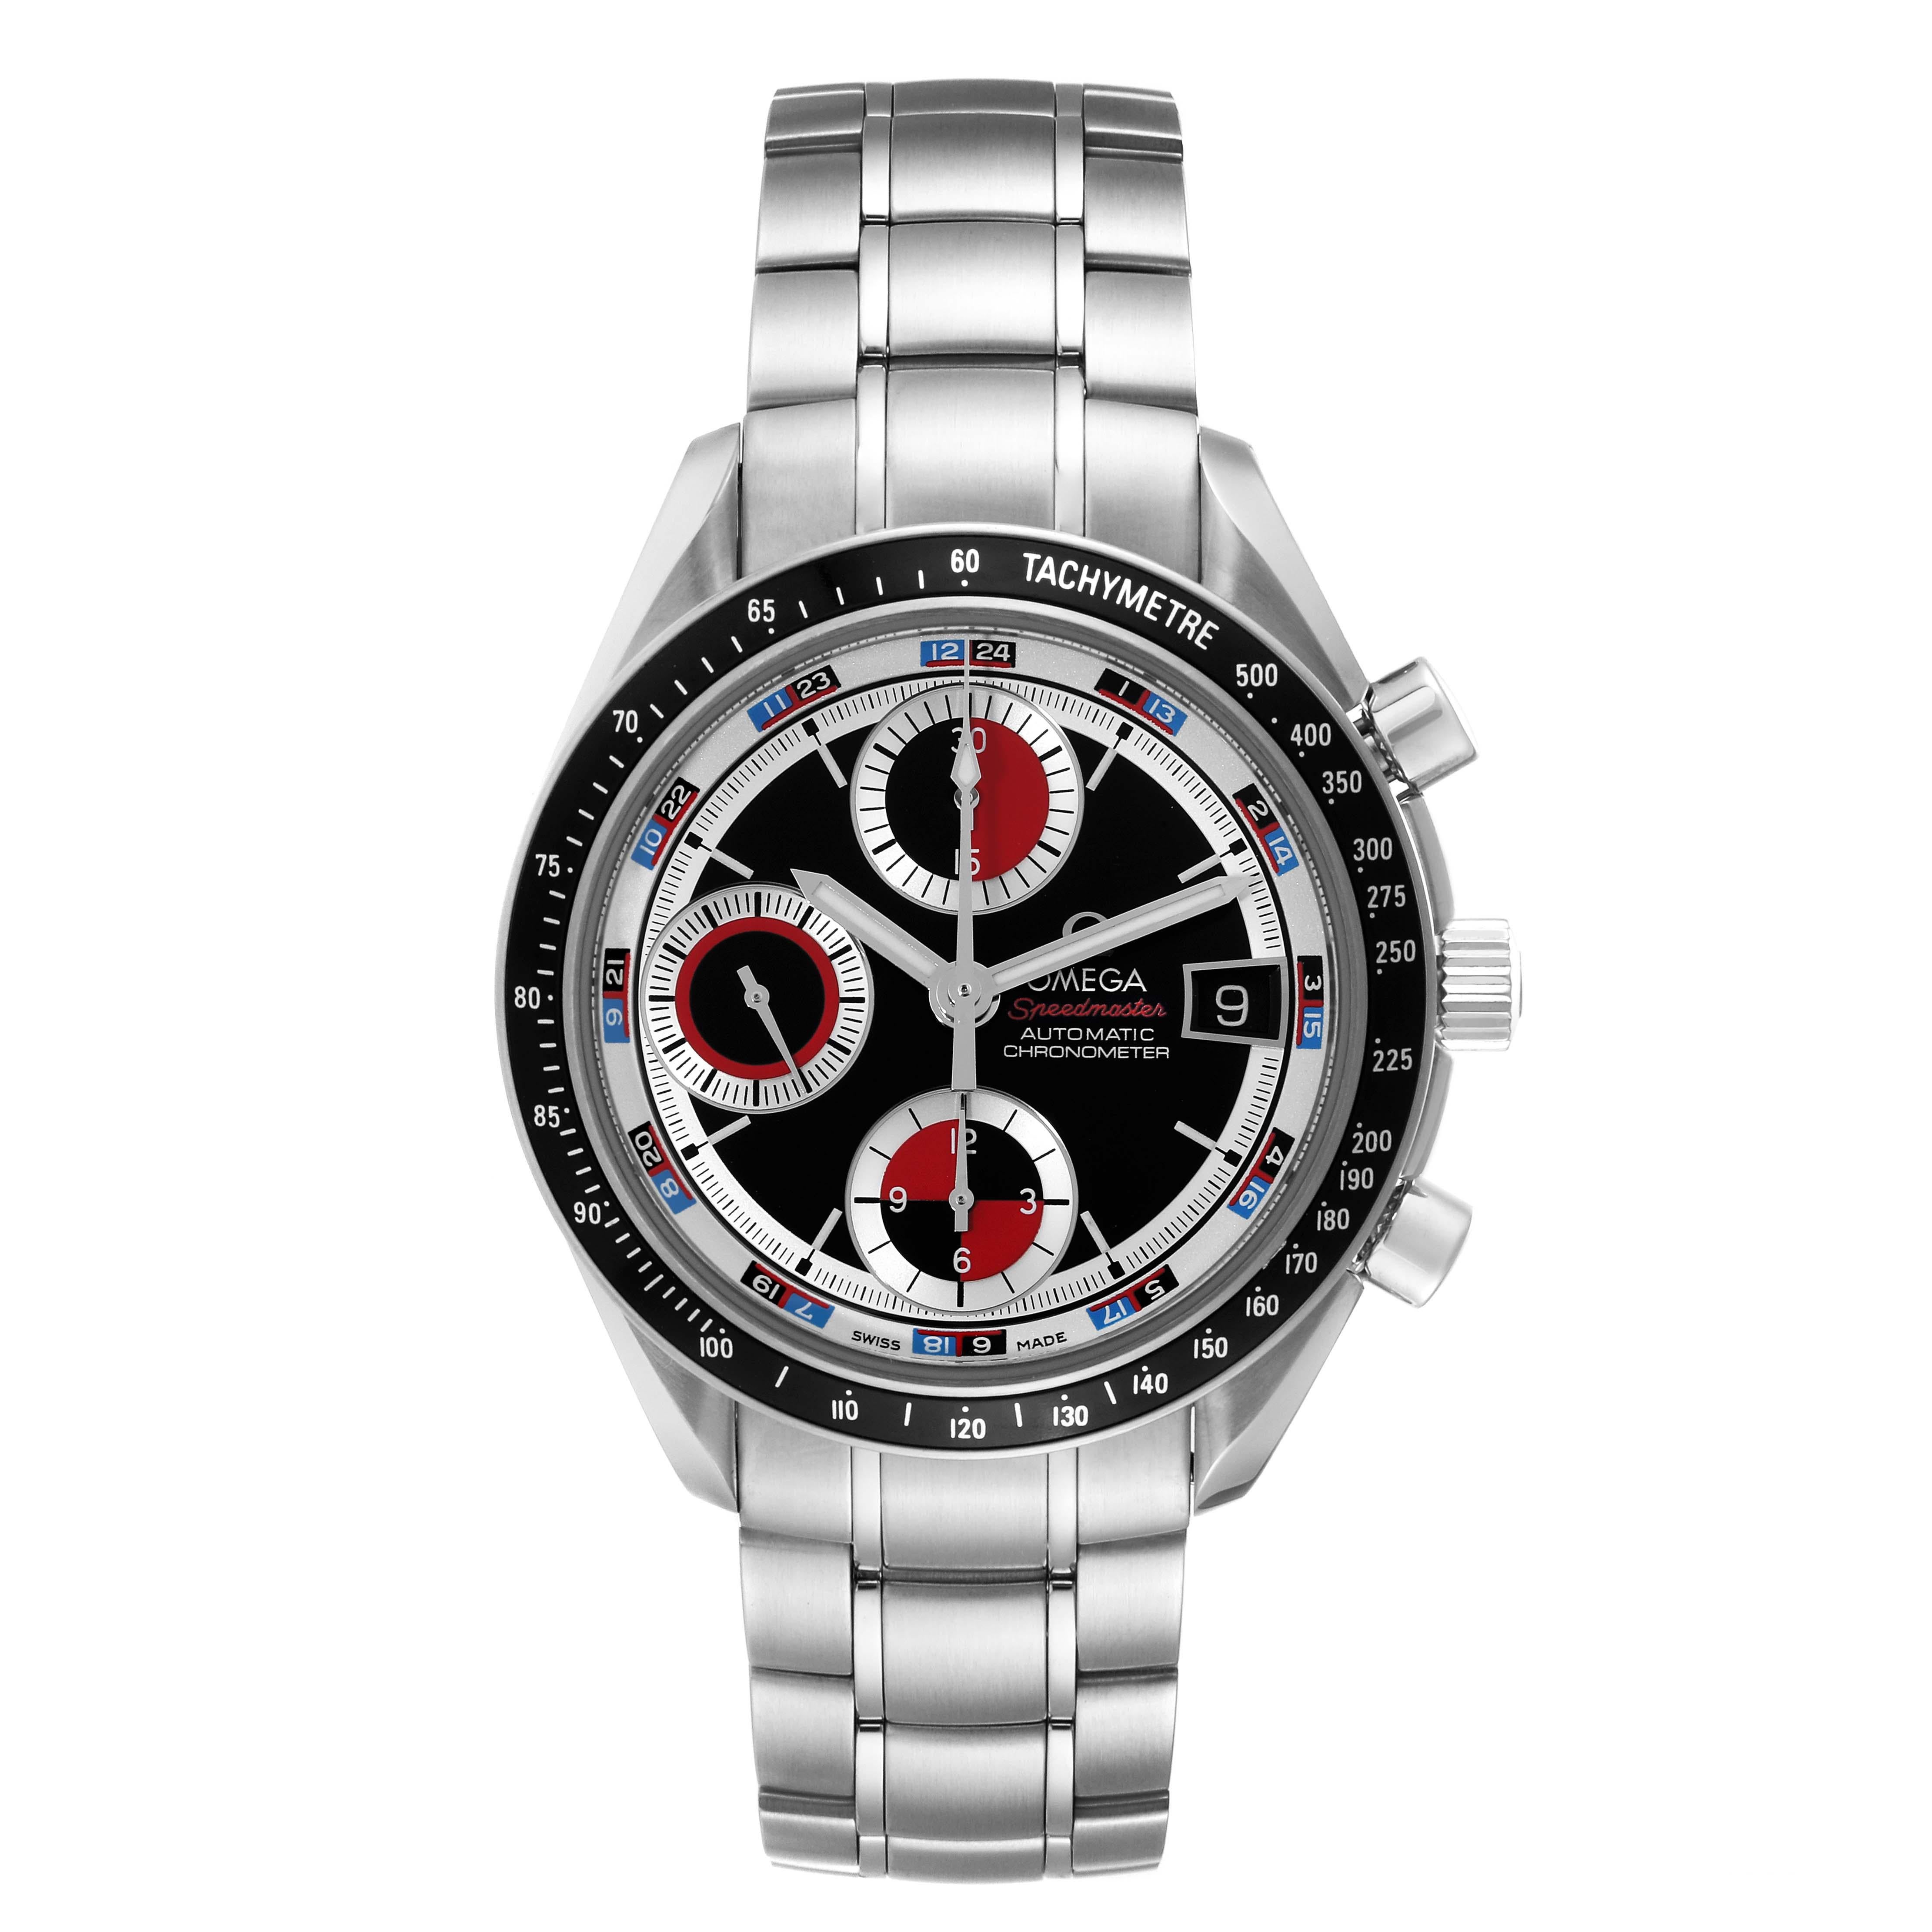 Omega Speedmaster Black Red Casino Dial Steel Mens Watch 3210.52.00 Card. Mouvement chronographe automatique à remontage automatique. Boîtier rond en acier inoxydable de 40 mm de diamètre. Lunette noire avec échelle tachymétrique. Verre saphir